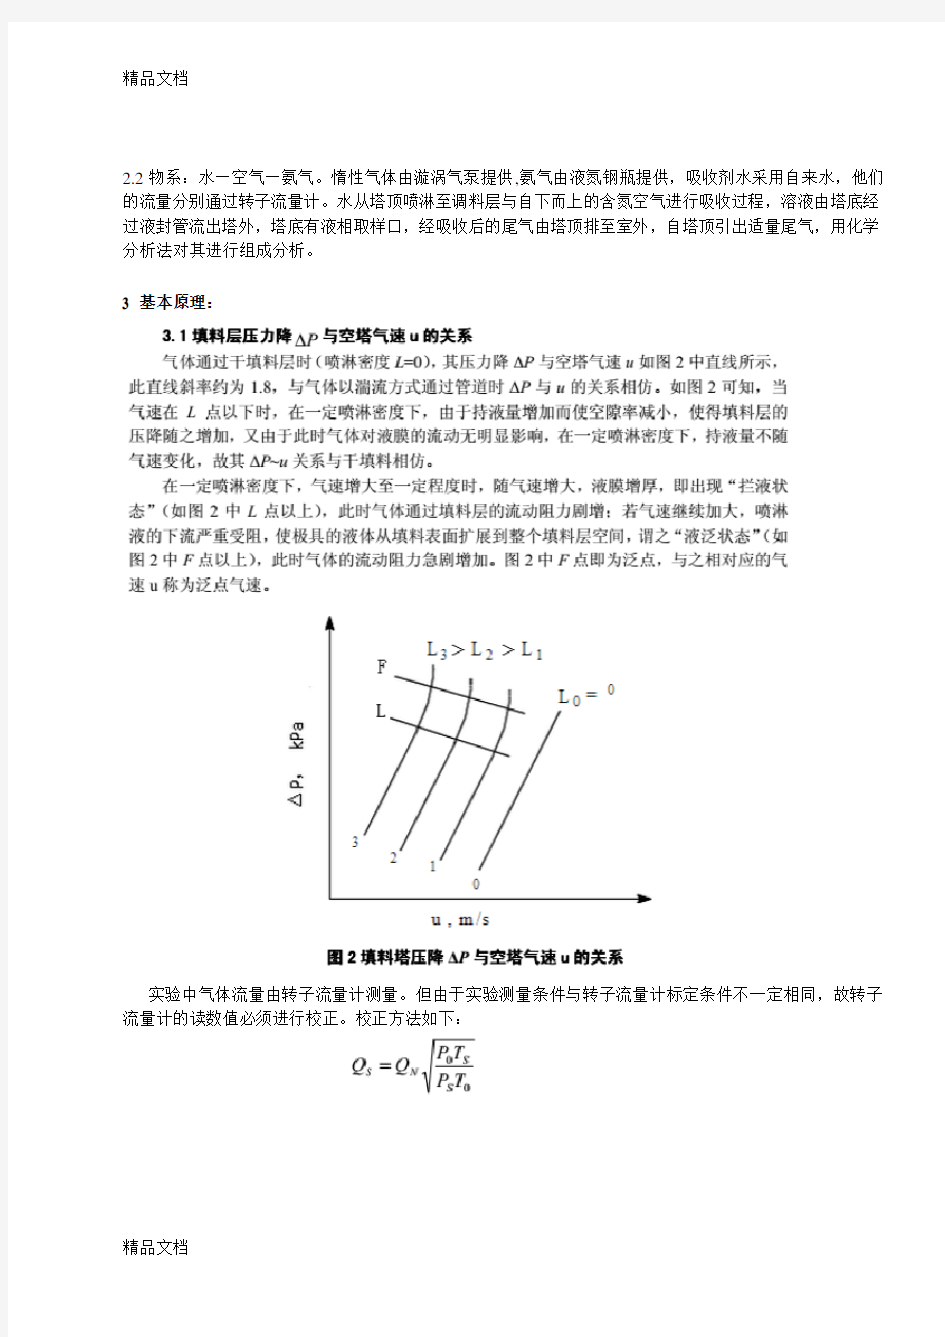 最新浙江大学化工原理实验---填料塔吸收实验报告分析解析